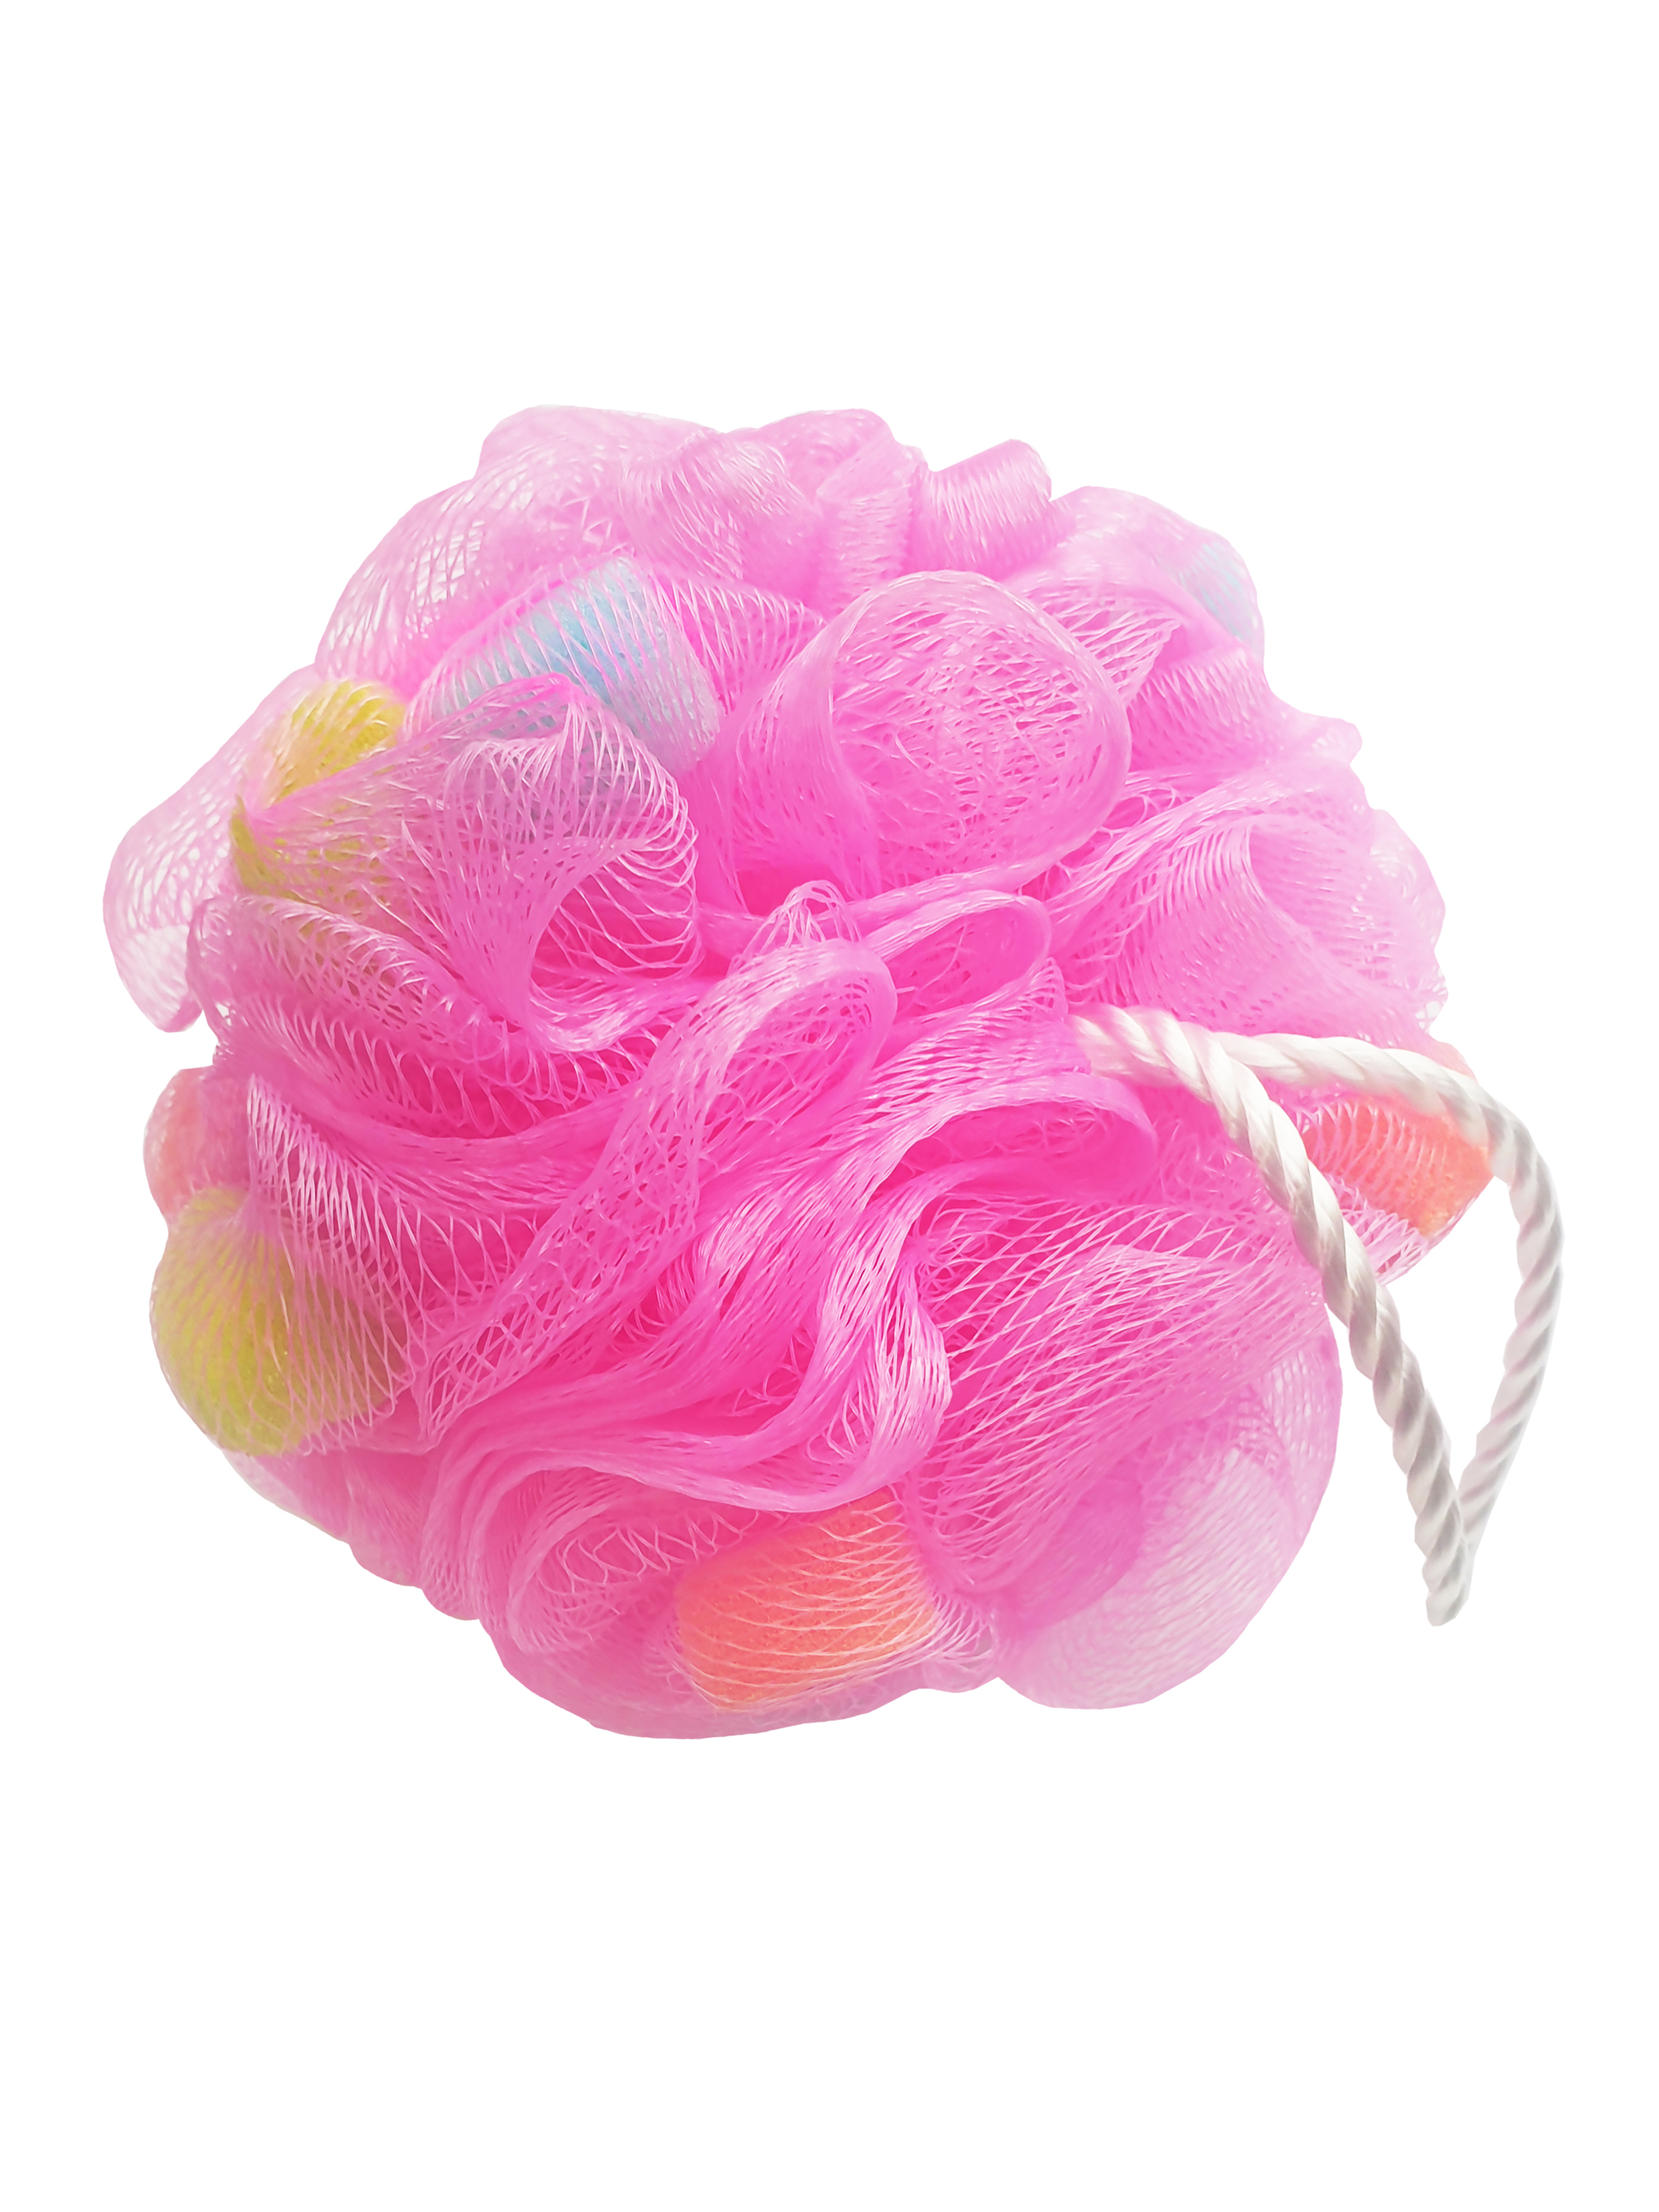 Мочалка-шар Beauty Style с поролоновой губкой цвет в ассортименте